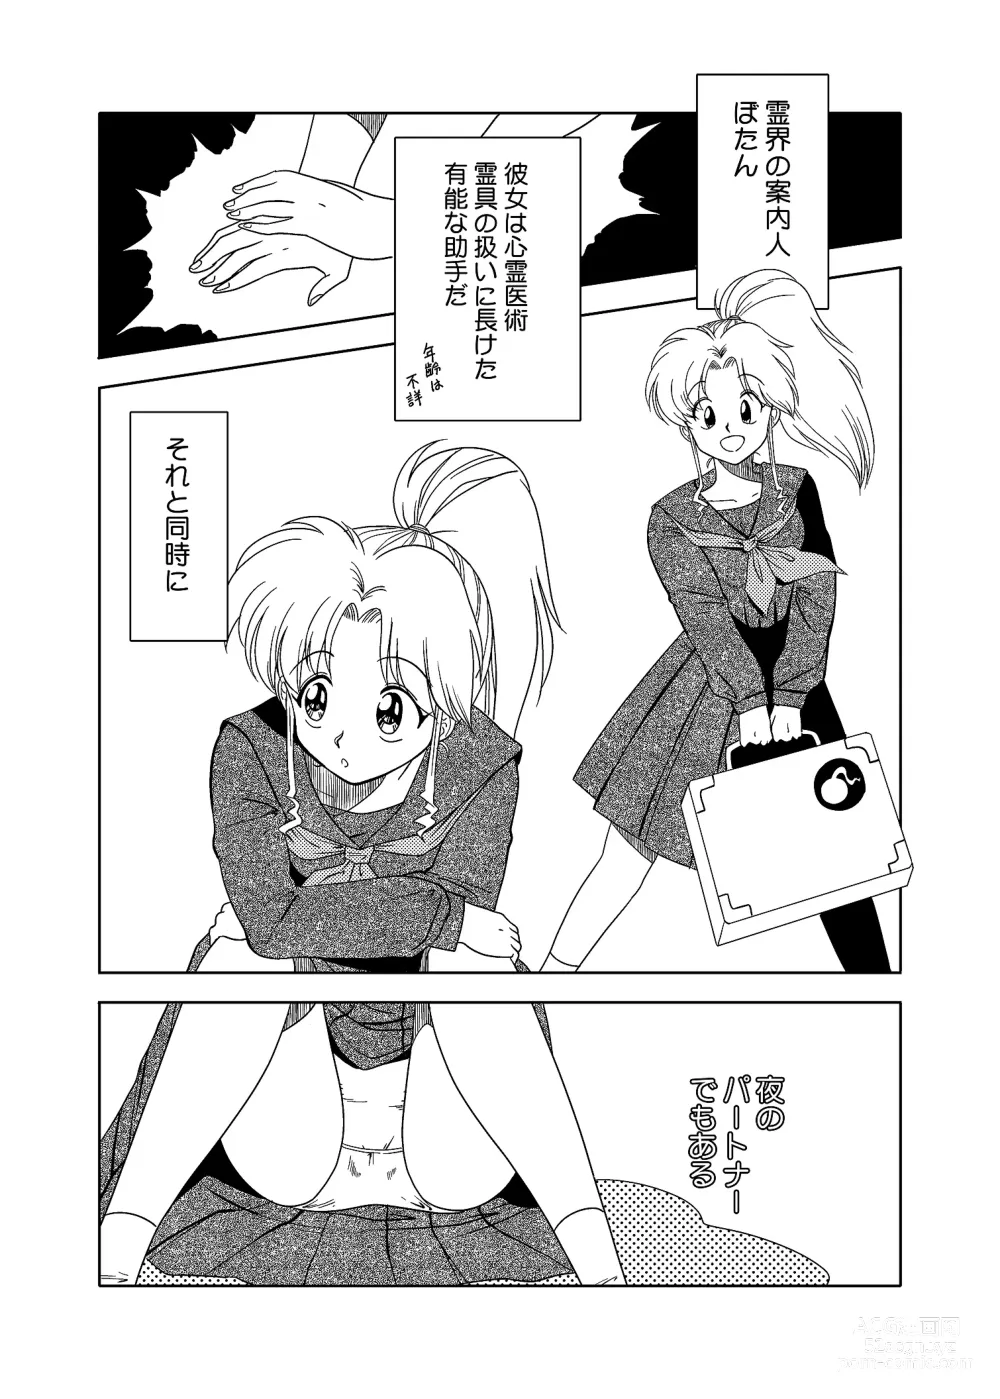 Page 3 of doujinshi Momo Botan